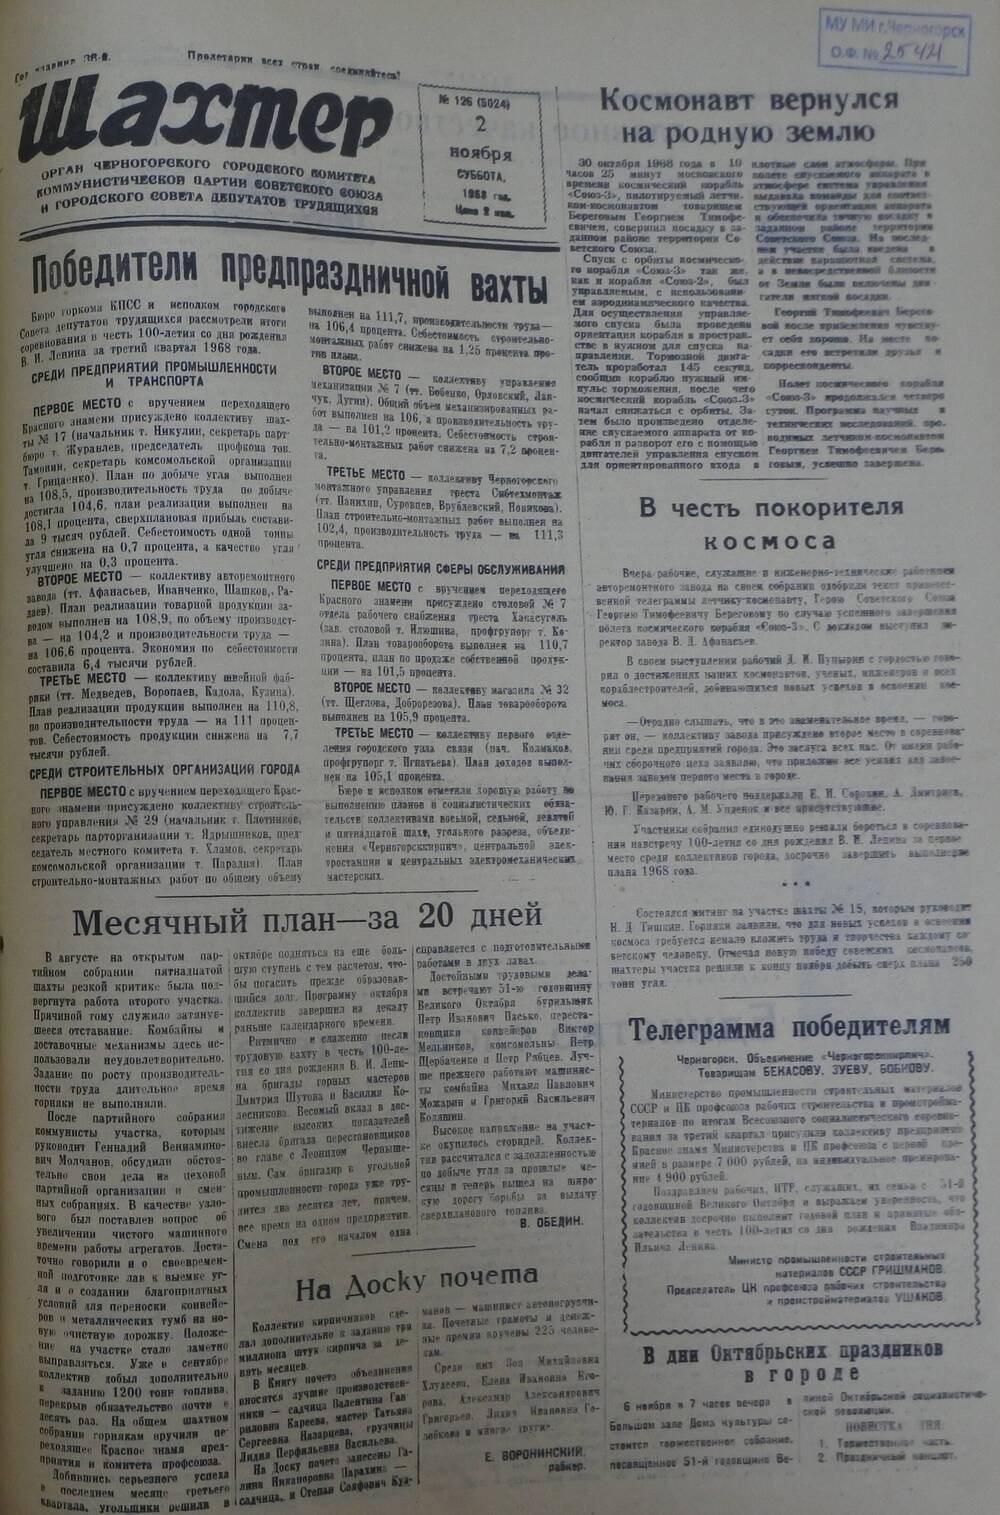 Газета «Шахтер». Выпуск № 126 от 2.11.1968 г.